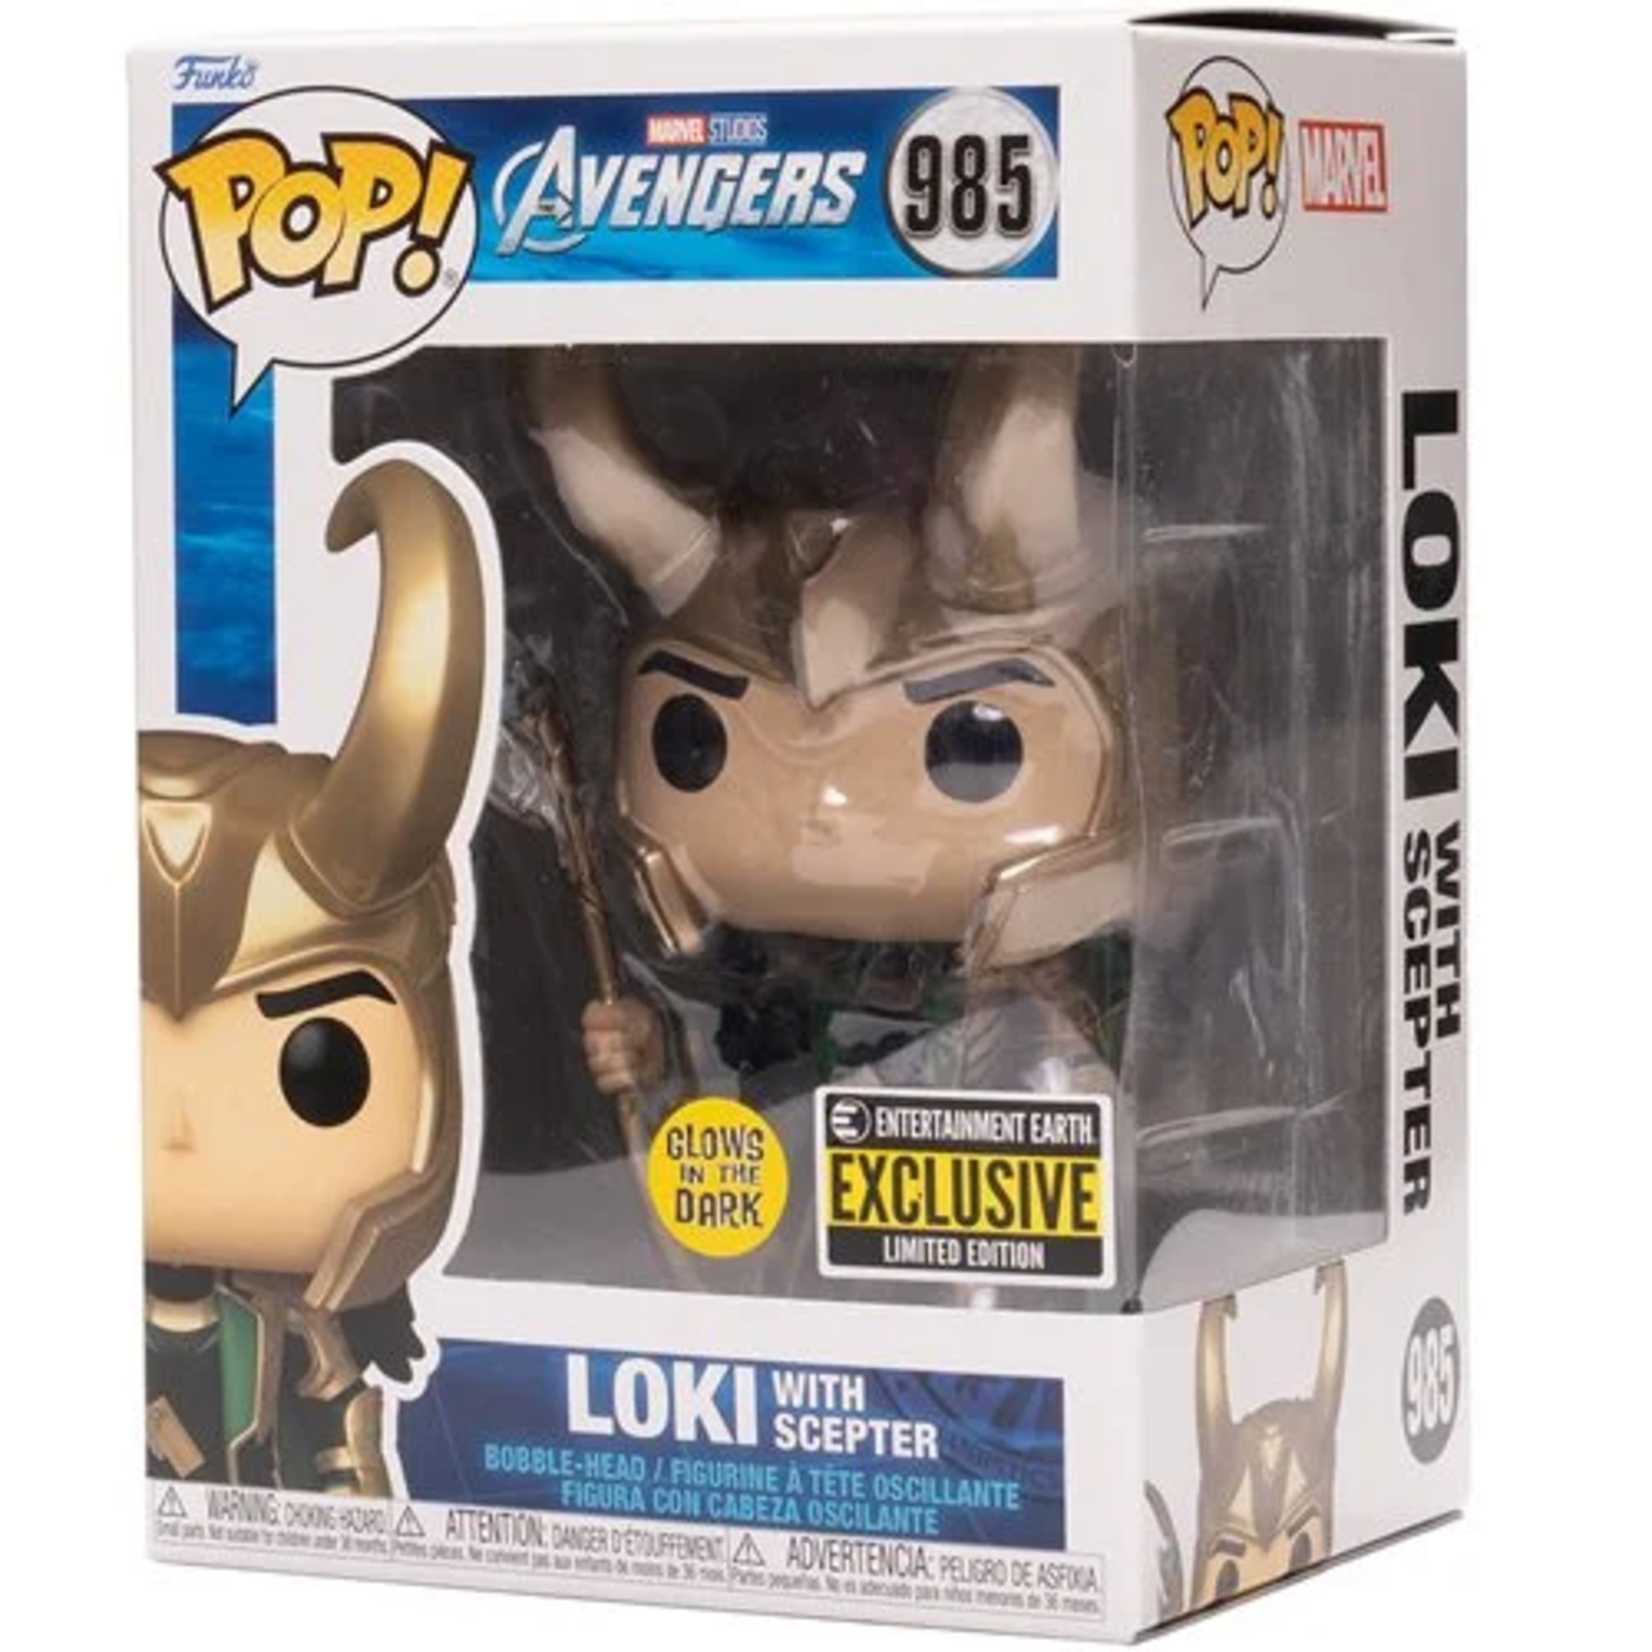 Funko [Preorder] Avengers Loki with Scepter Pop! Vinyl Figure - EE Exclusive